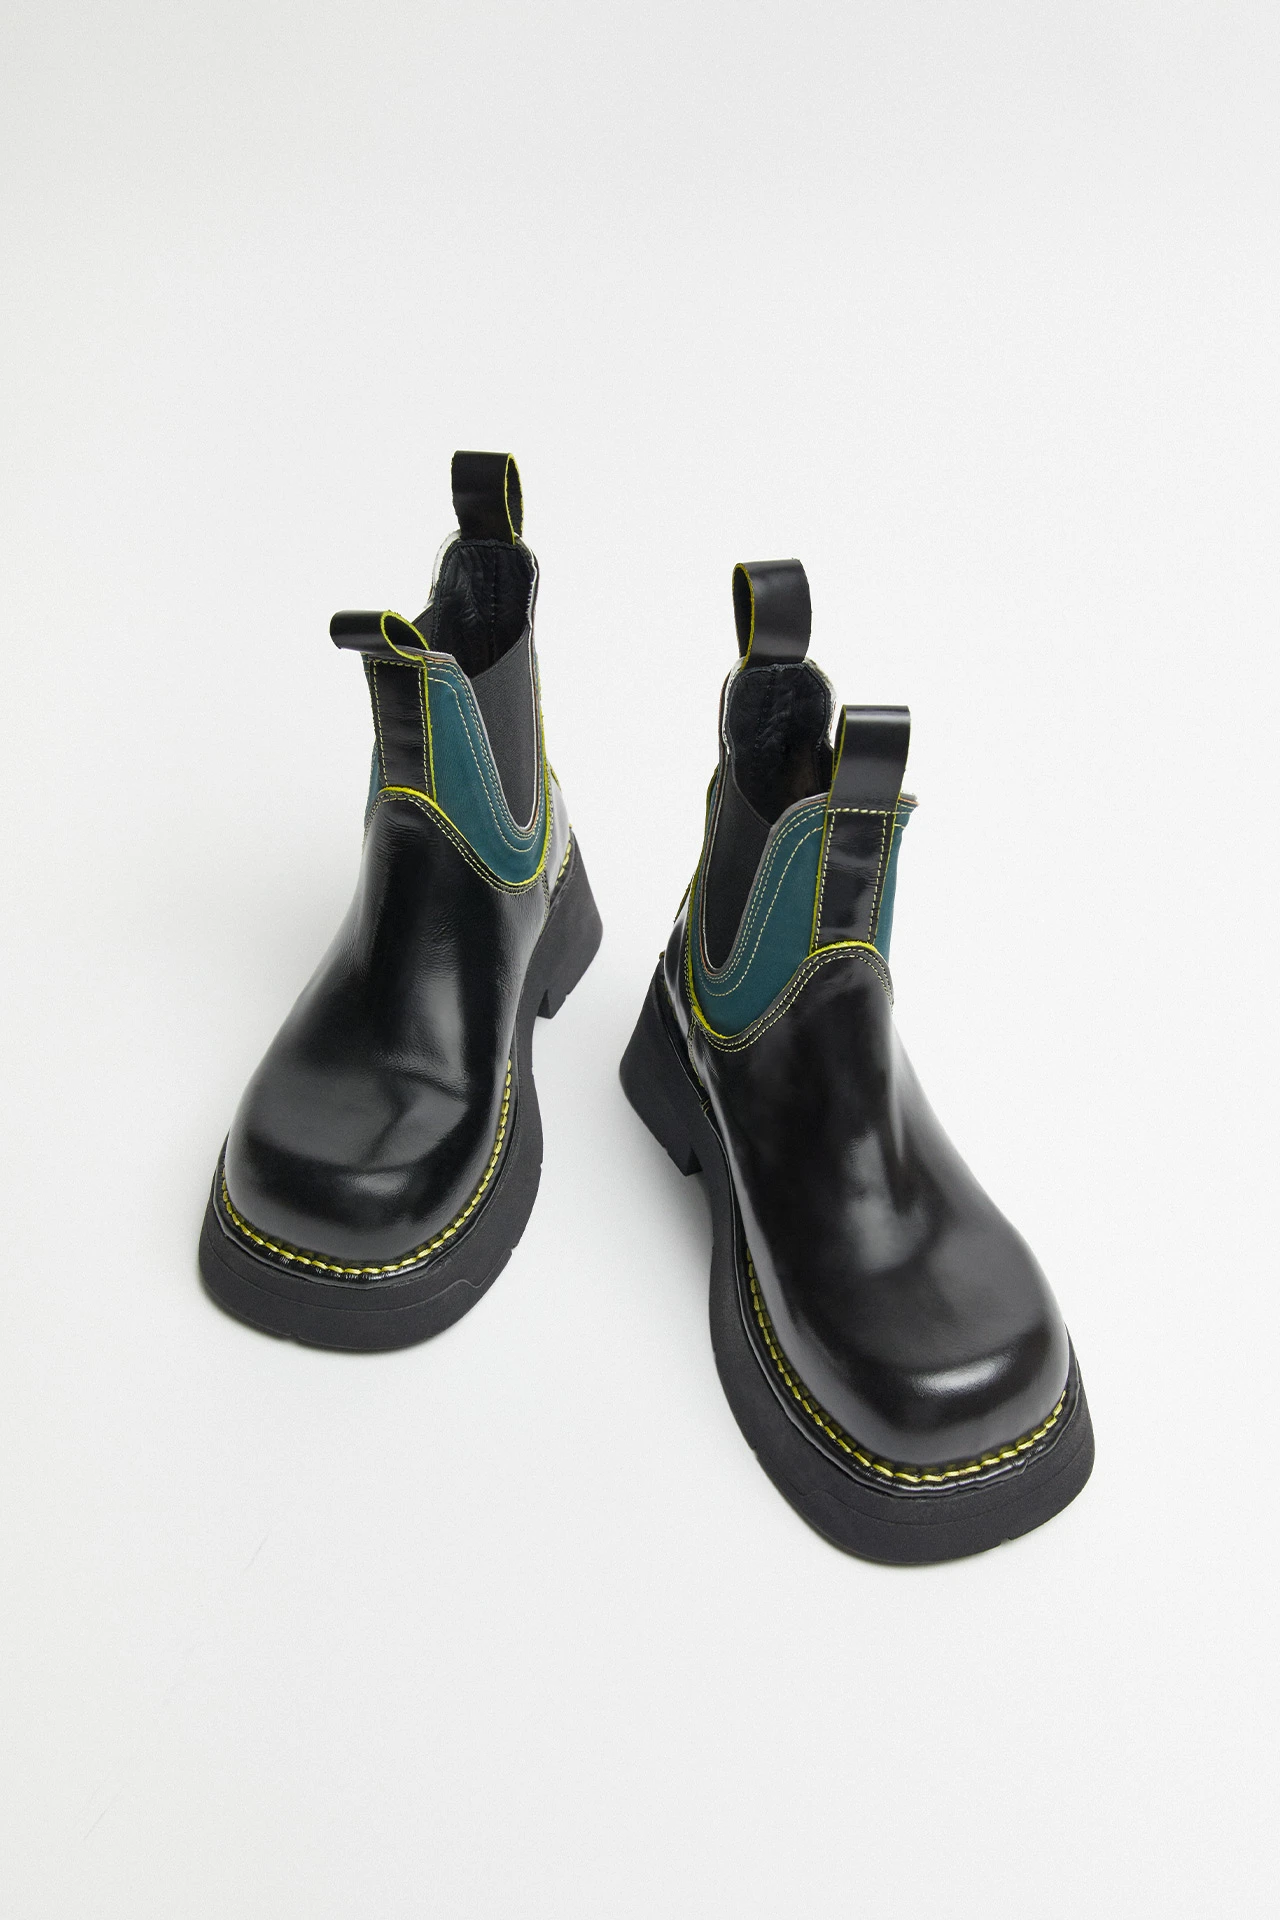 Miista-kaya-raven-ankle-boots-04